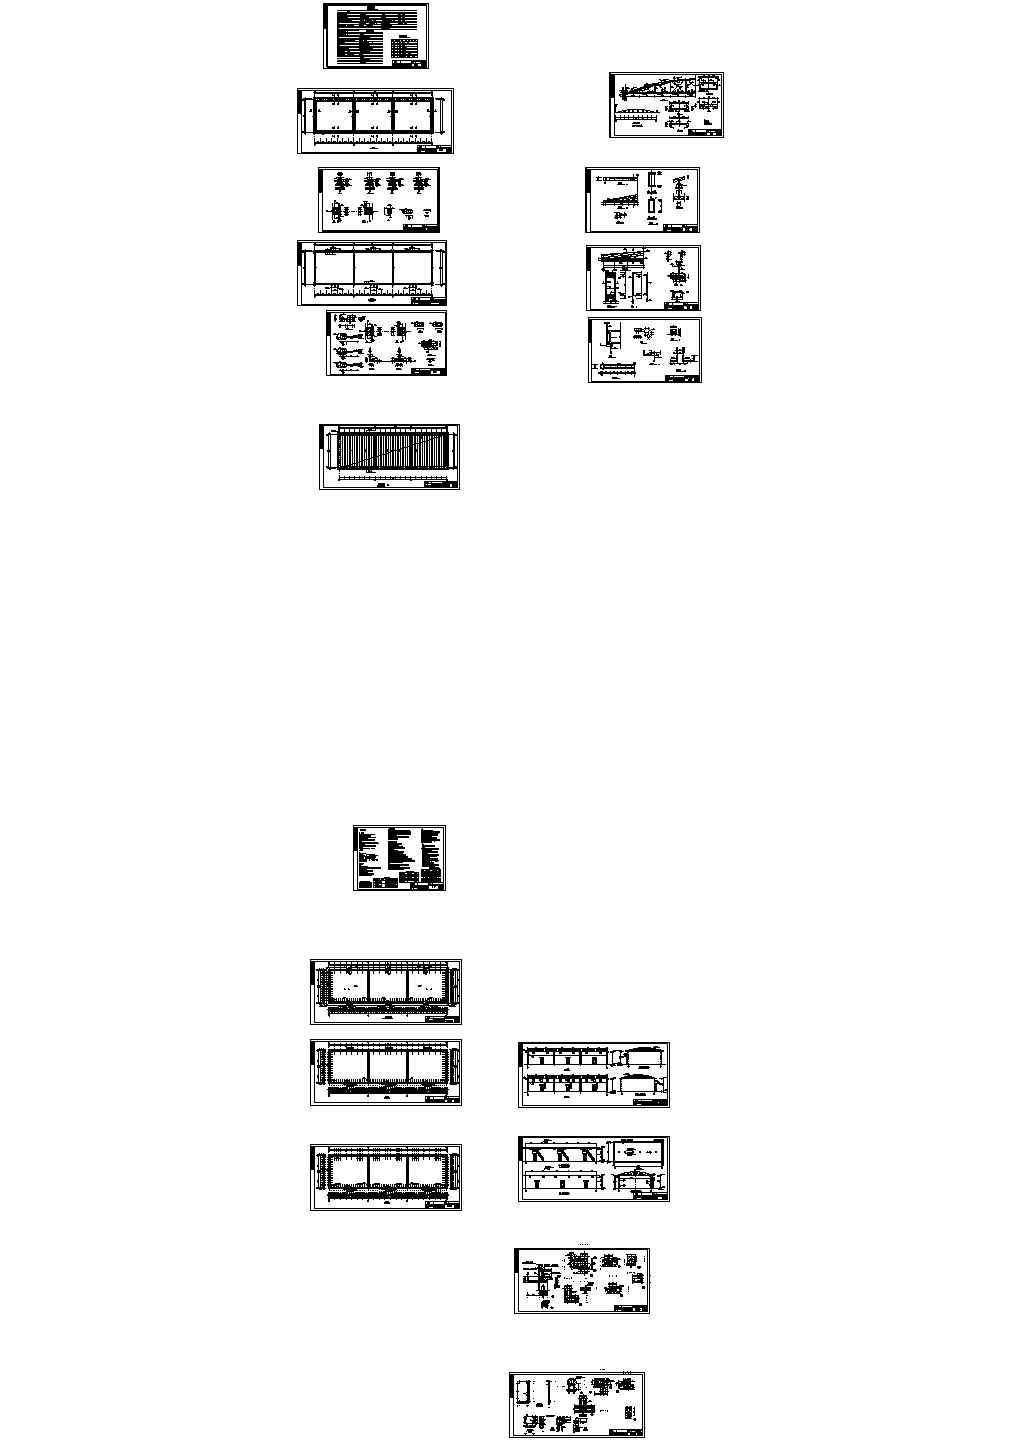 大跨度拱板屋盖仓库结构施工图纸(18米跨、含建筑图)